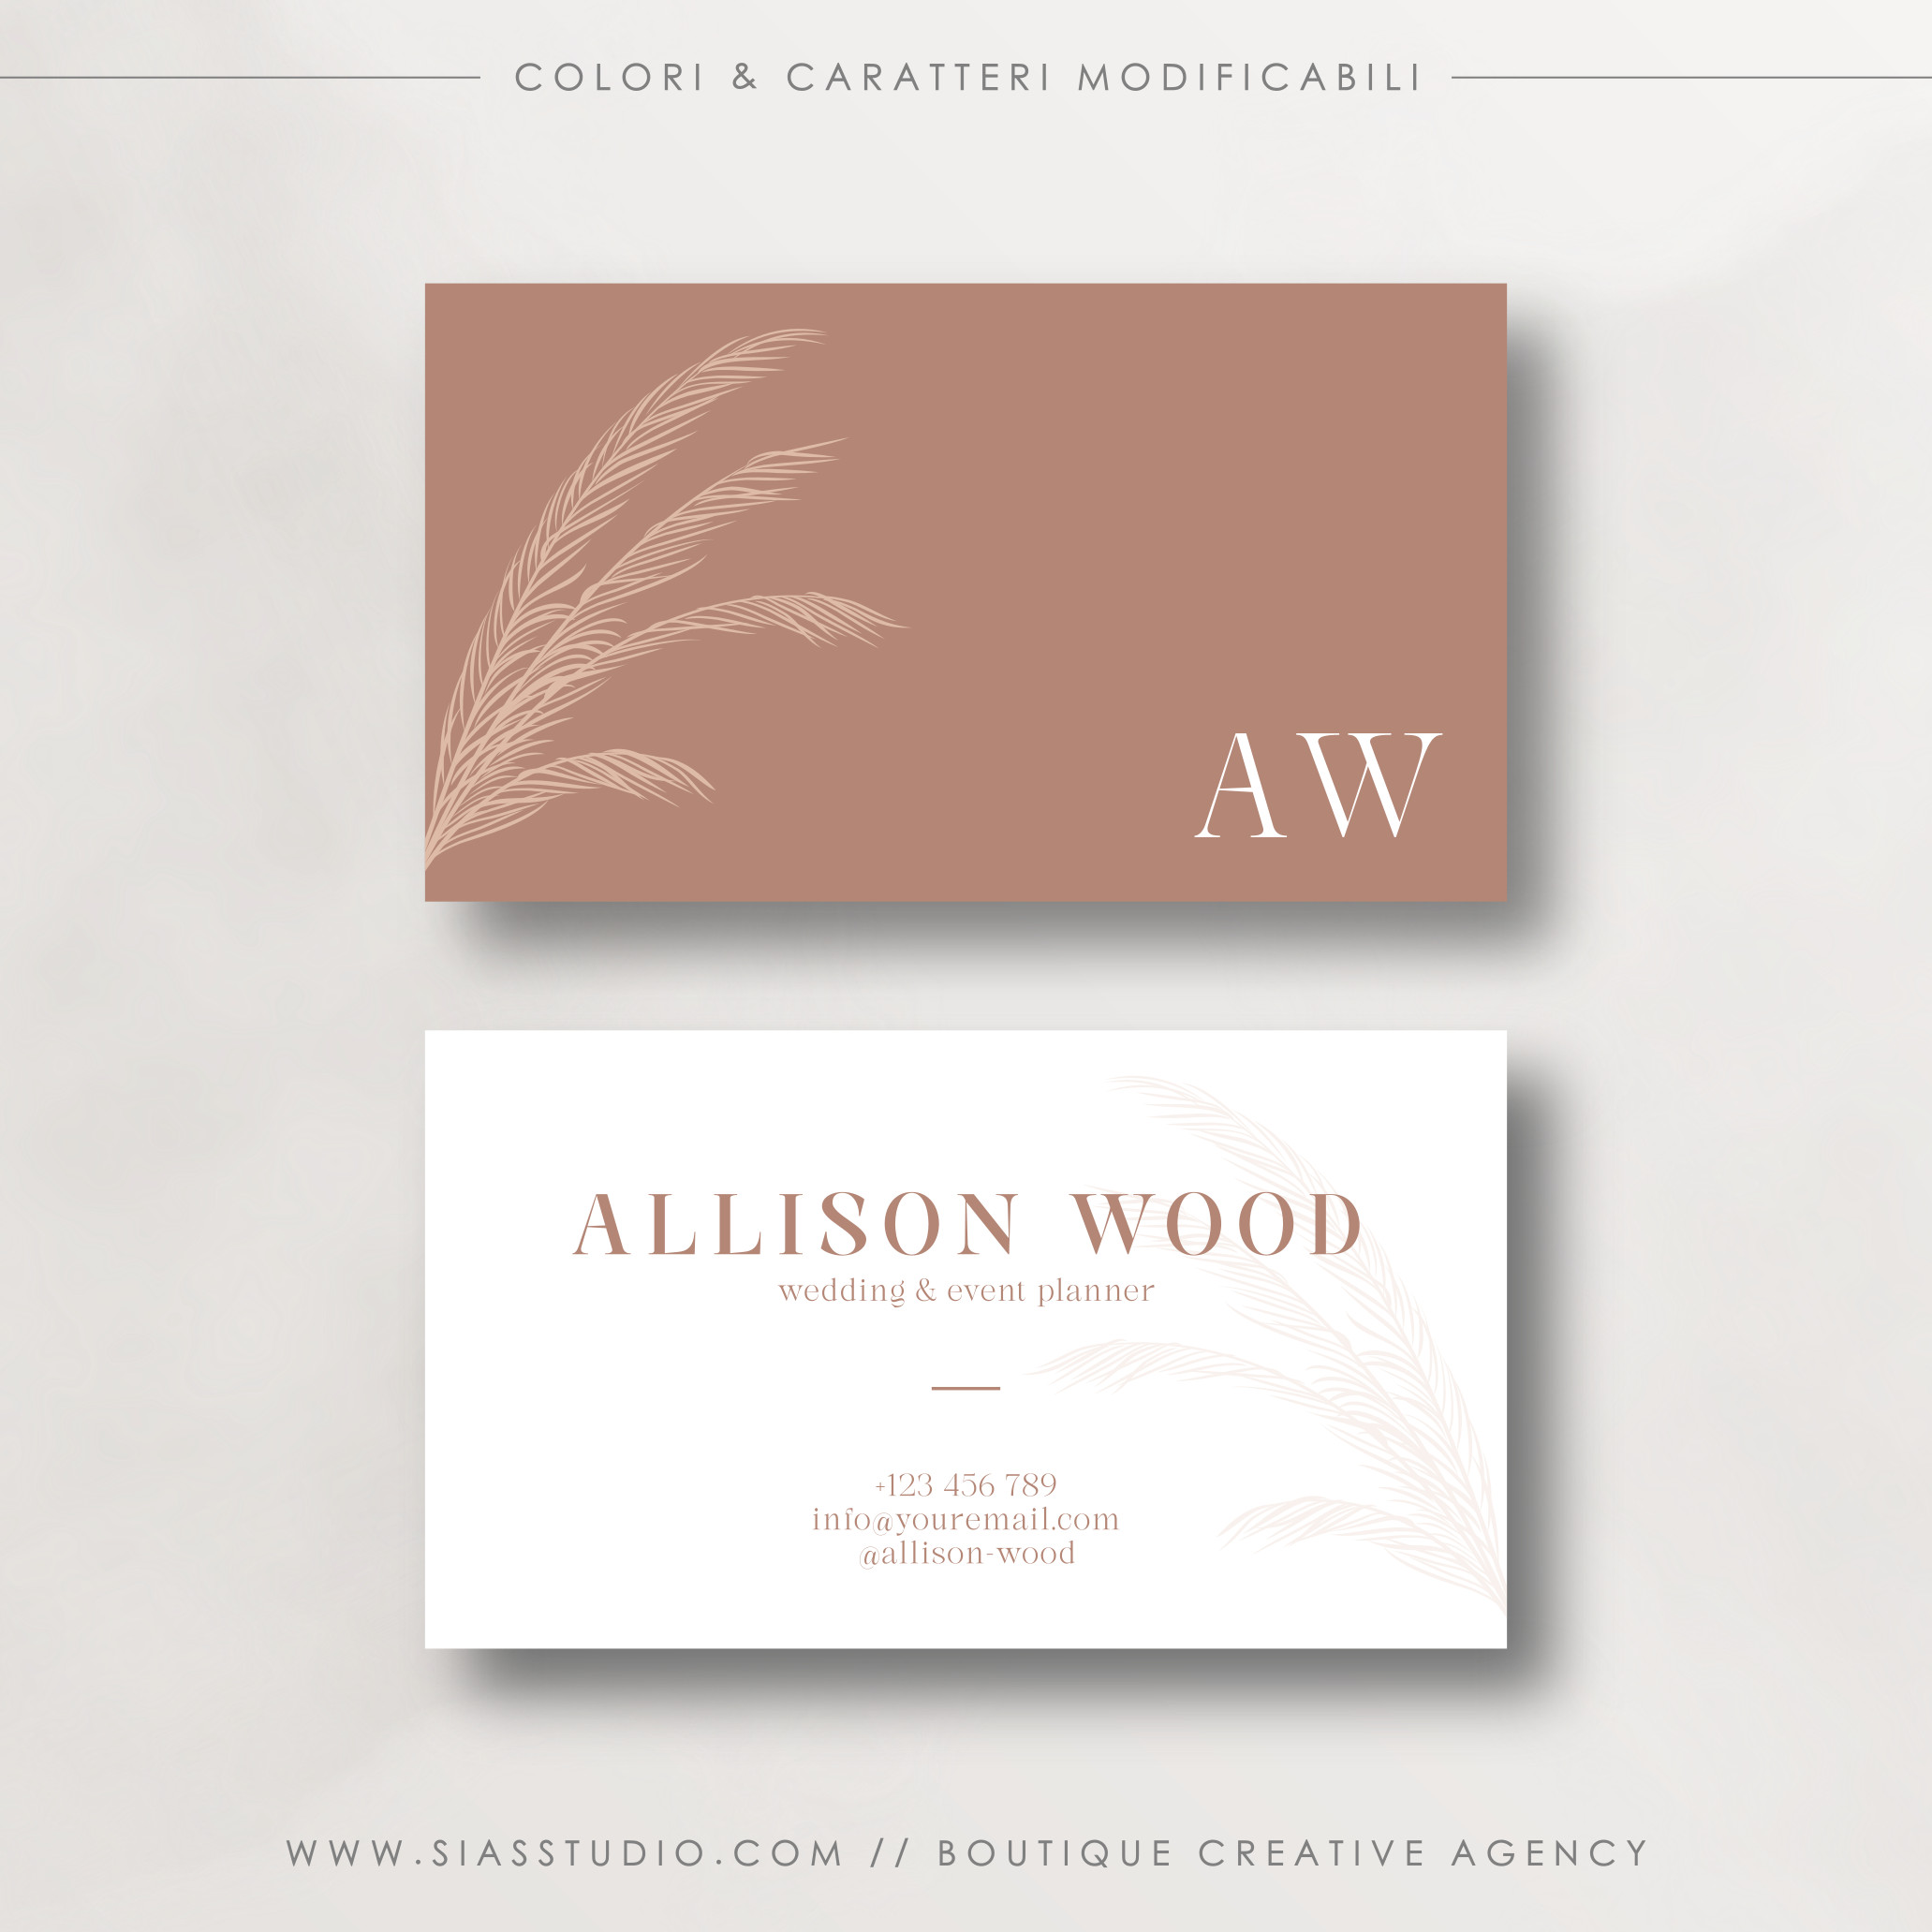 Allison Wood - Biglietto da visita